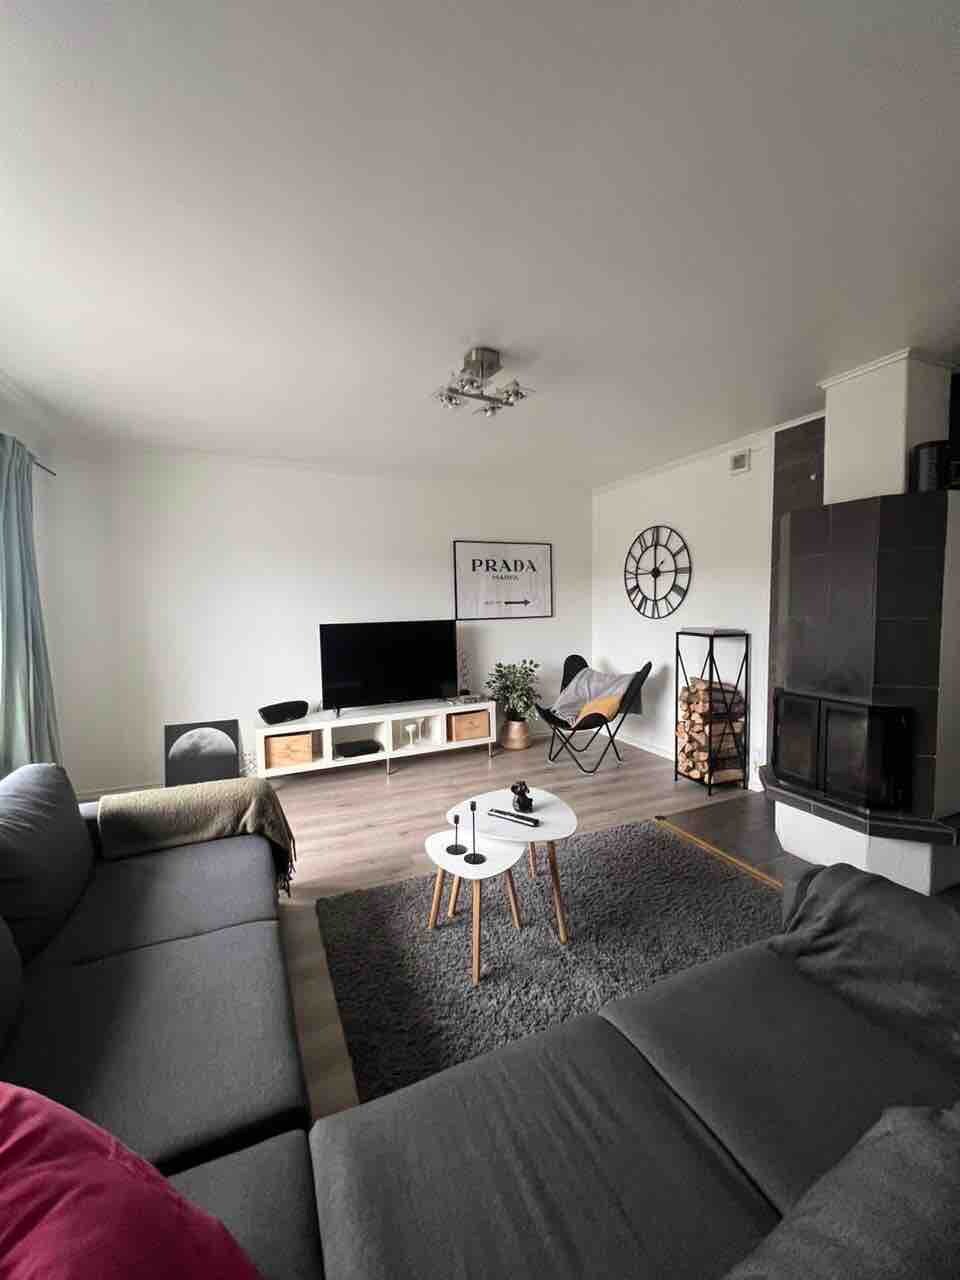 Modern lägenhet med villakänsla i södra Mariehamn!